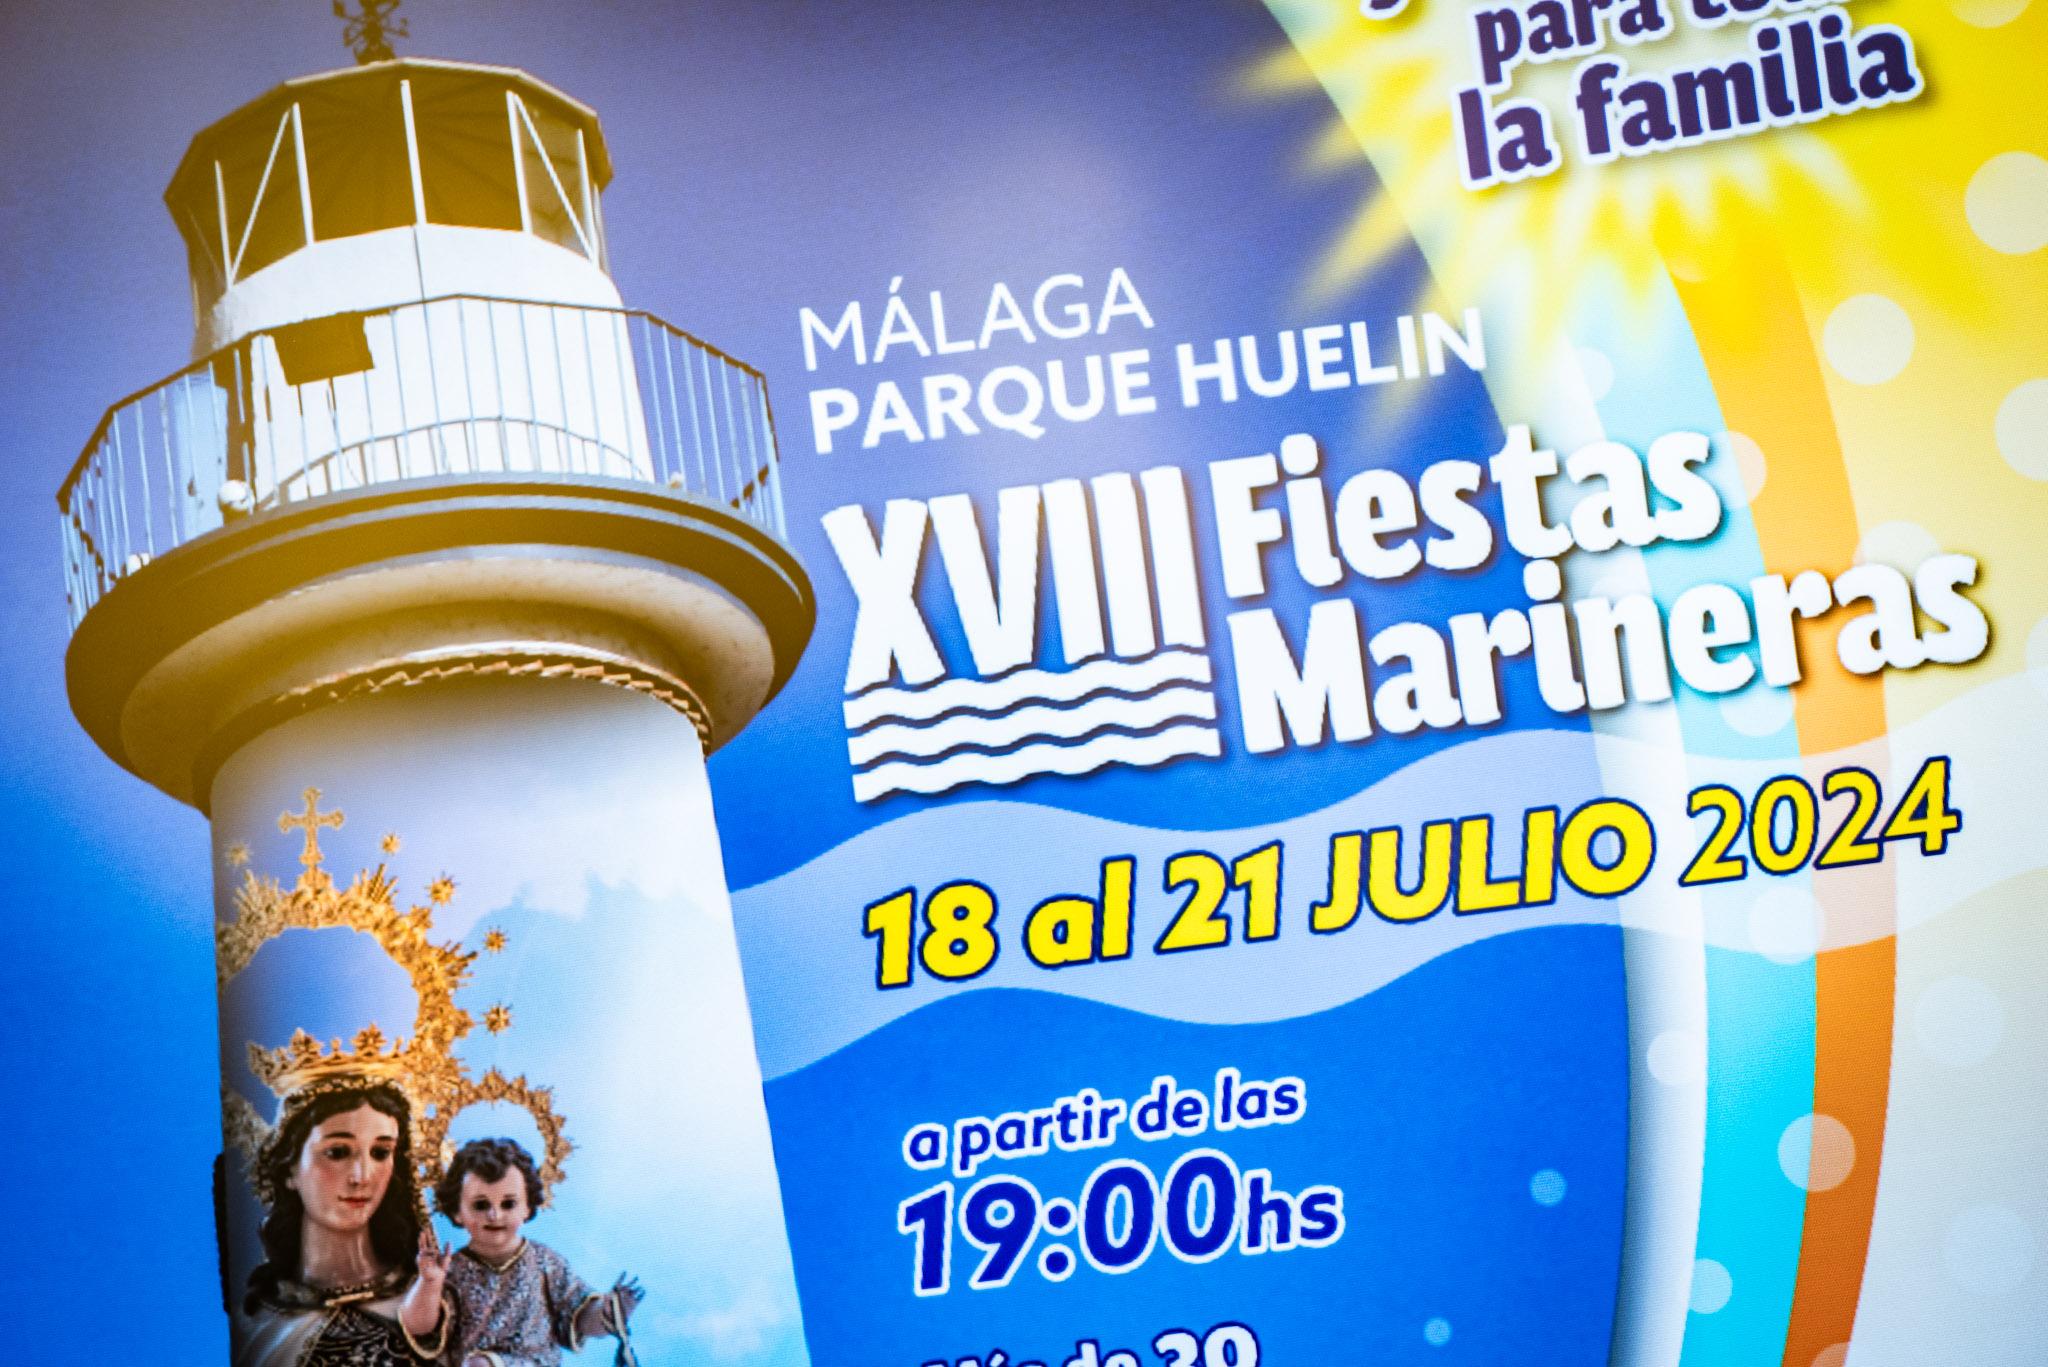 Las XVIII Fiestas Marineras ‘Virgen del Carmen’ del distrito de Carretera de Cádiz se celebrarán entre el 18 y el 21 de julio en el parque de Huelin